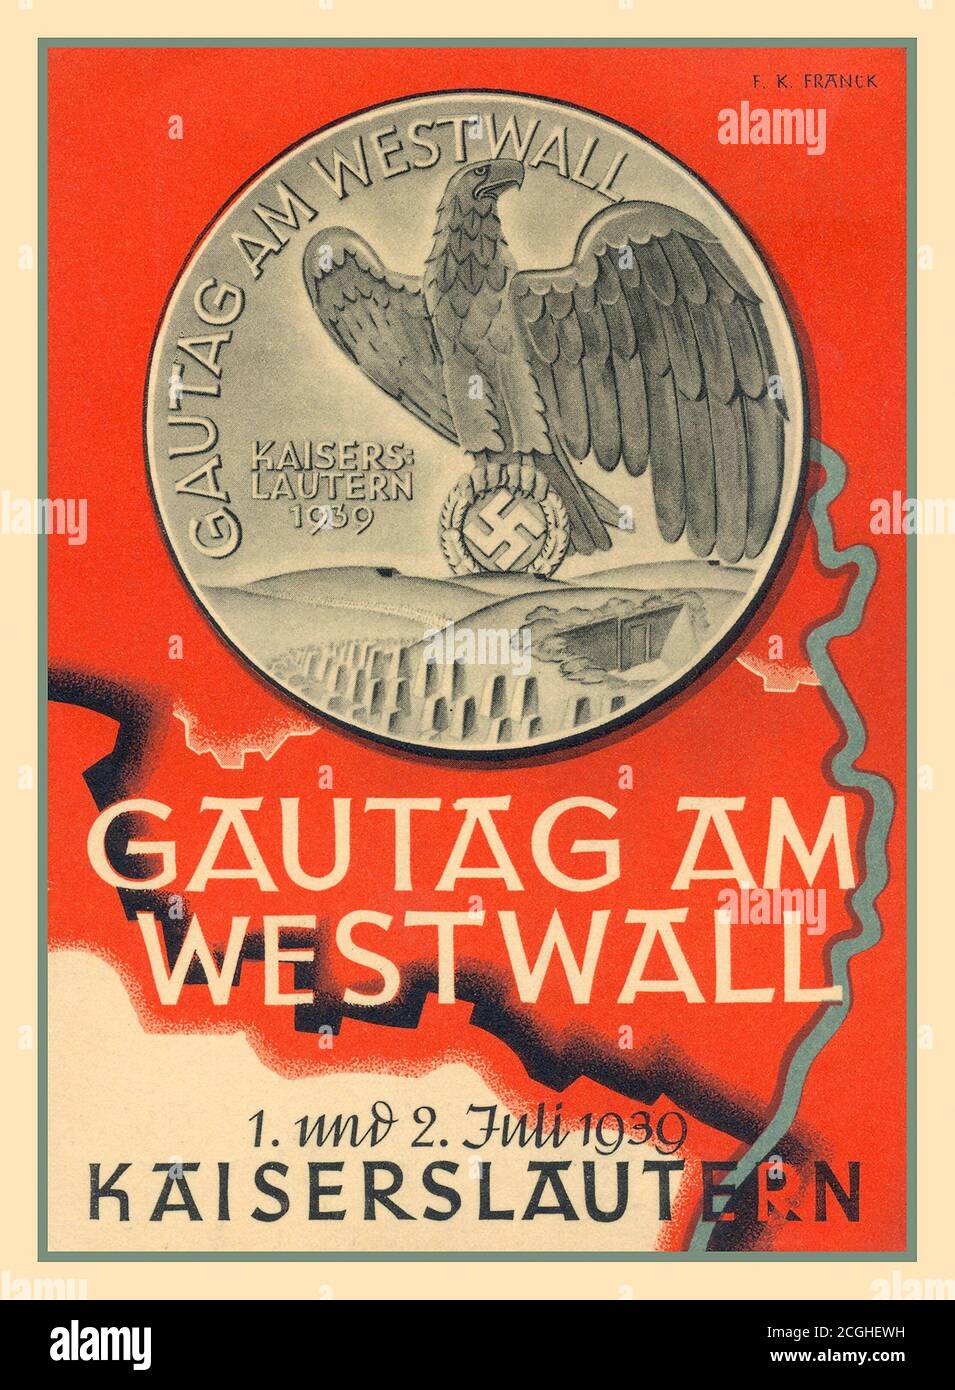 1939 German Nazi Propaganda poster GAUTAG AM GOWWALL ‘Good Day Westwall’ luglio 1939 medaglia di commemorazione Coin German NSDAP (PARTITO NAZISTA) SA (BrownShirts) DISTINTIVO DEL GIORNO ‘GAUTAG AM GOWWALL’. Foto Stock